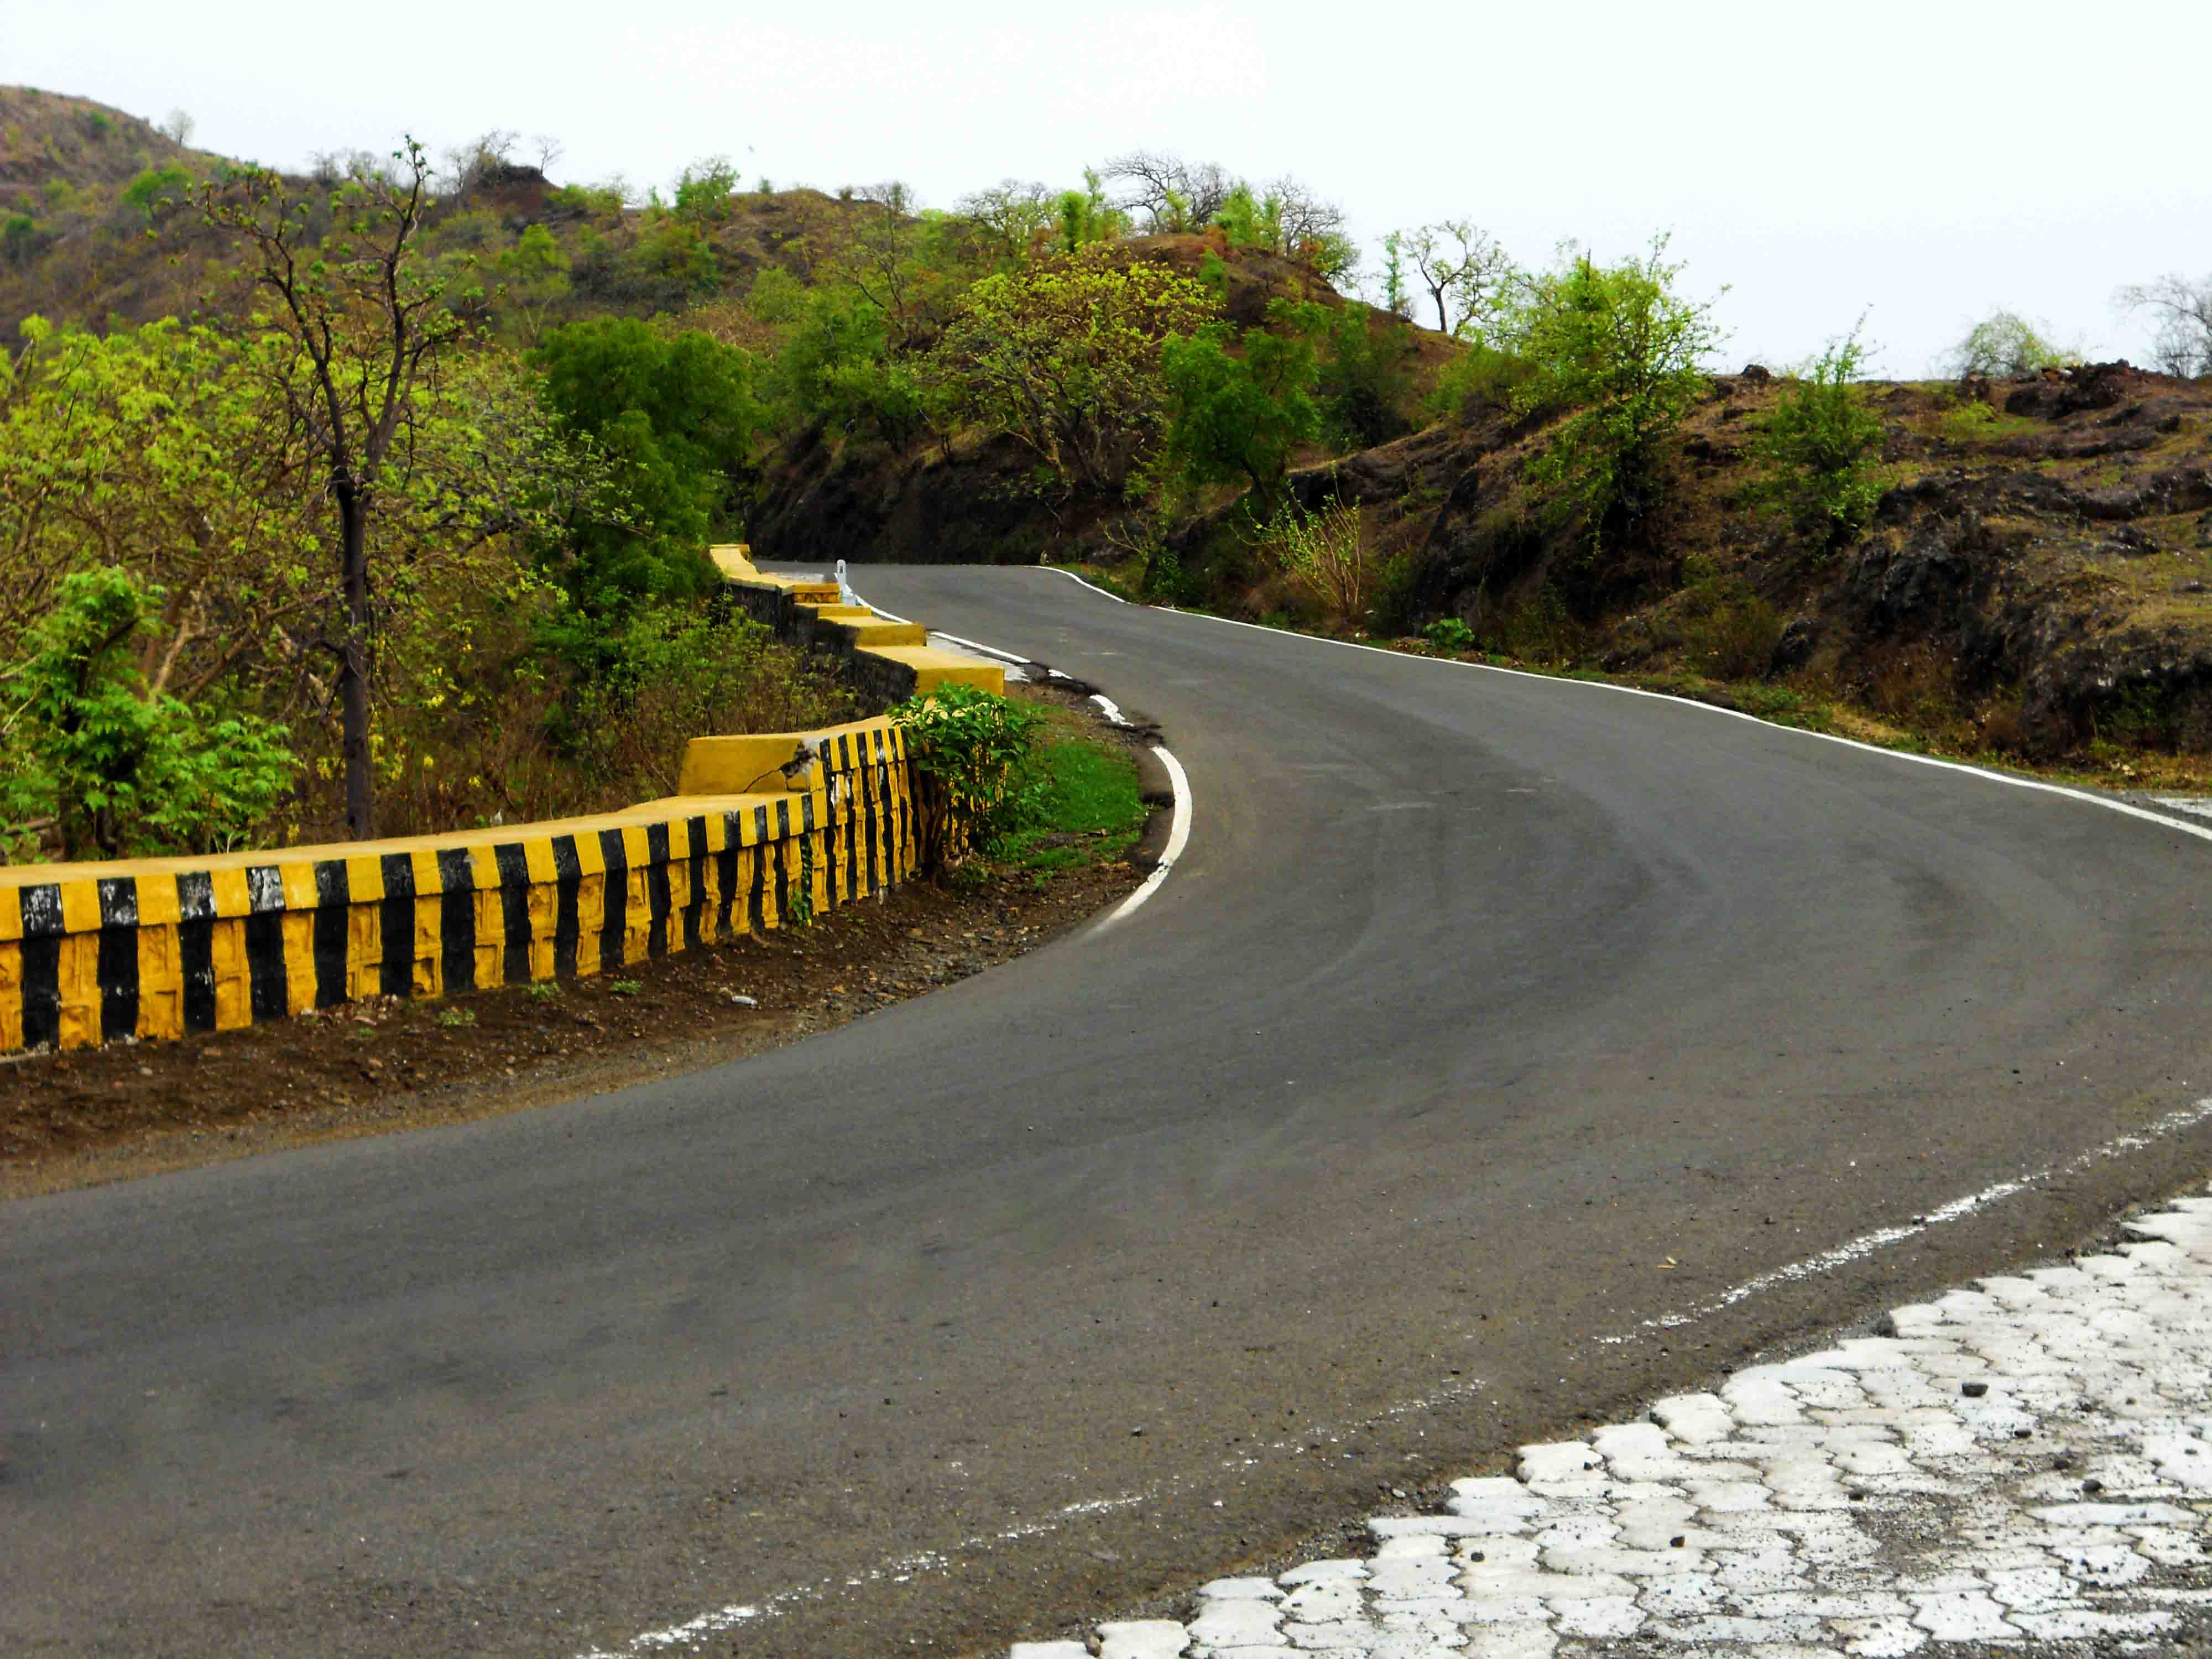 File:Buldhana road by Hrushikesh Kulkarni.jpg - Wikipedia